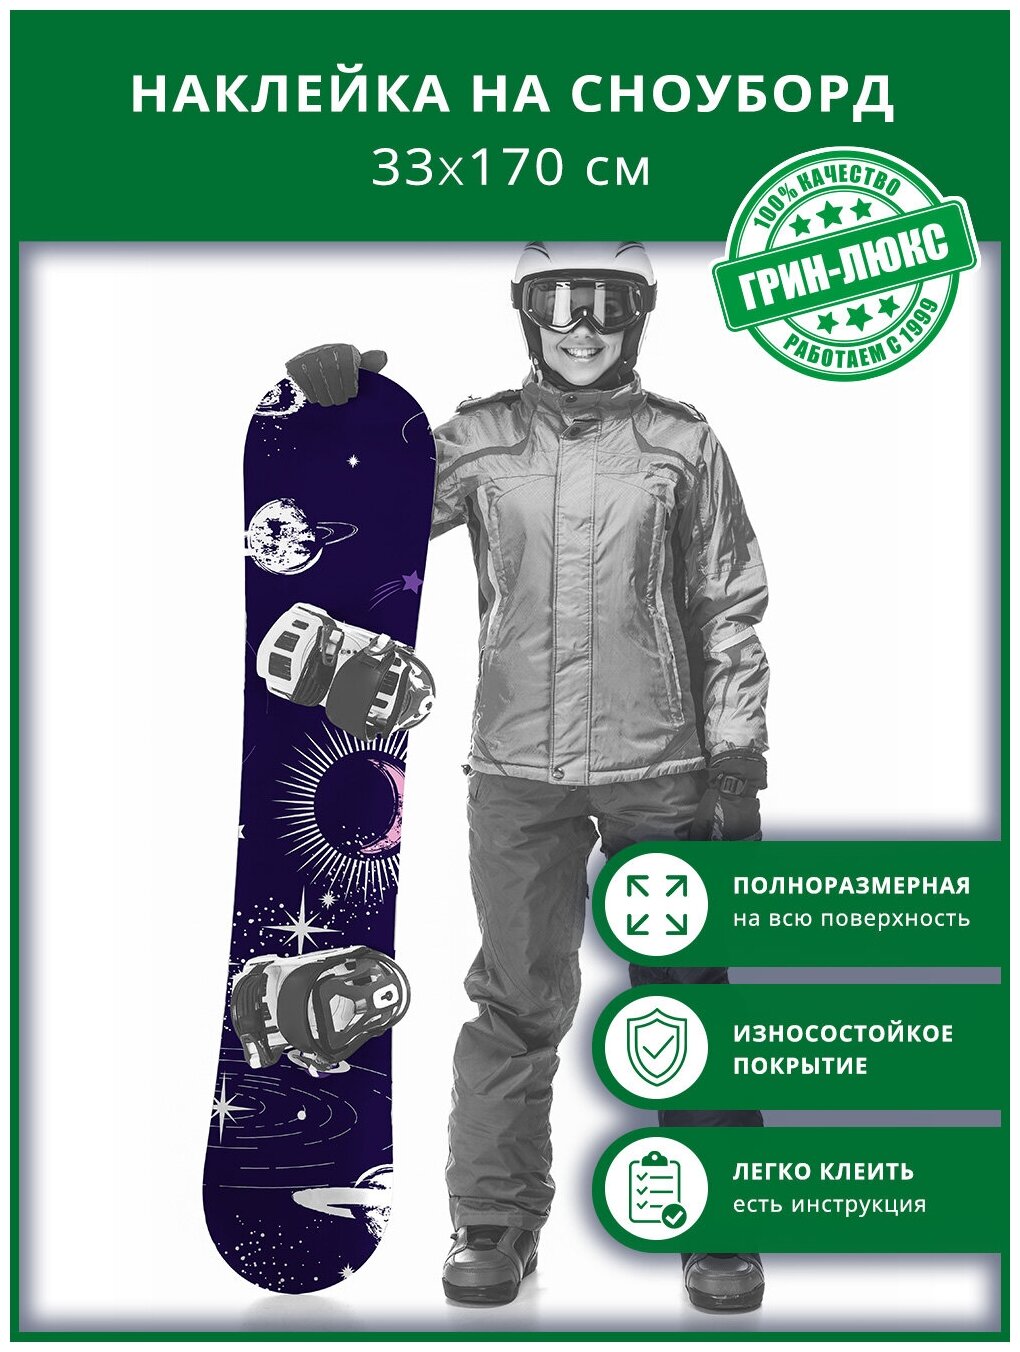 Наклейка на сноуборд с защитным глянцевым покрытием 33х170 см "Необъятный космос"